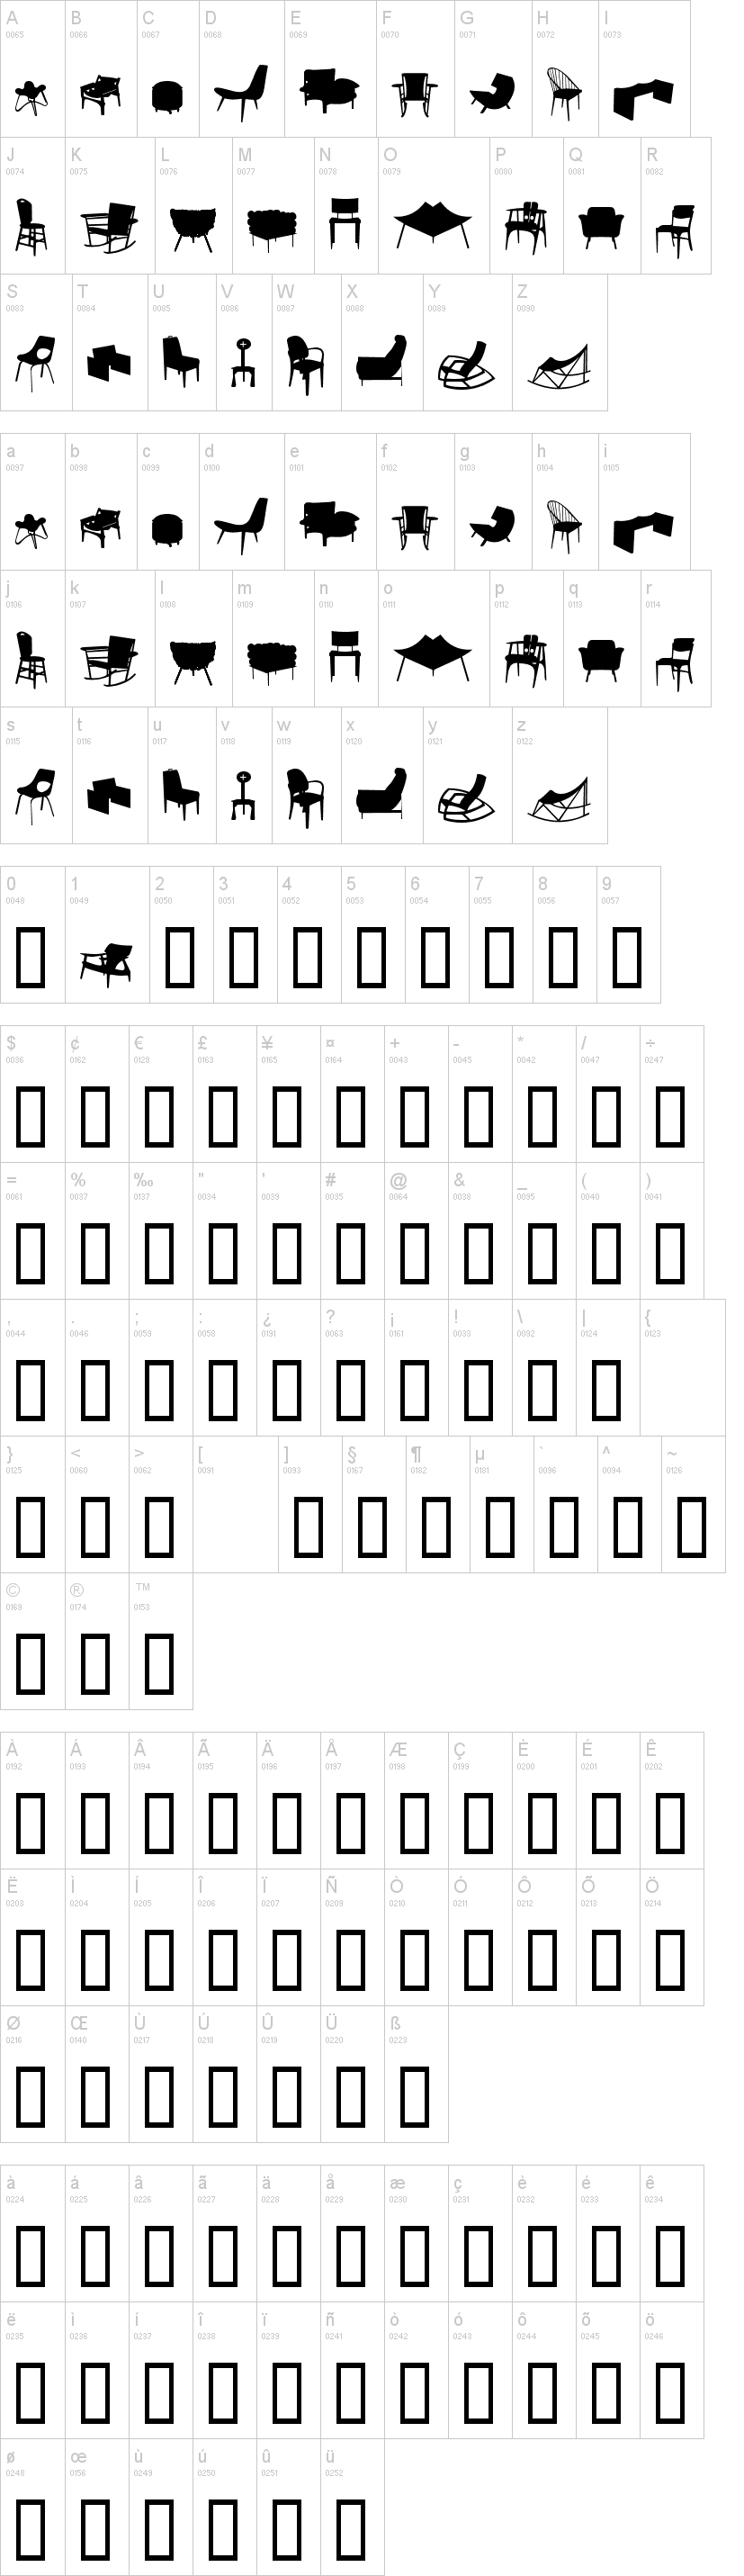 Cadeiras字符映射图